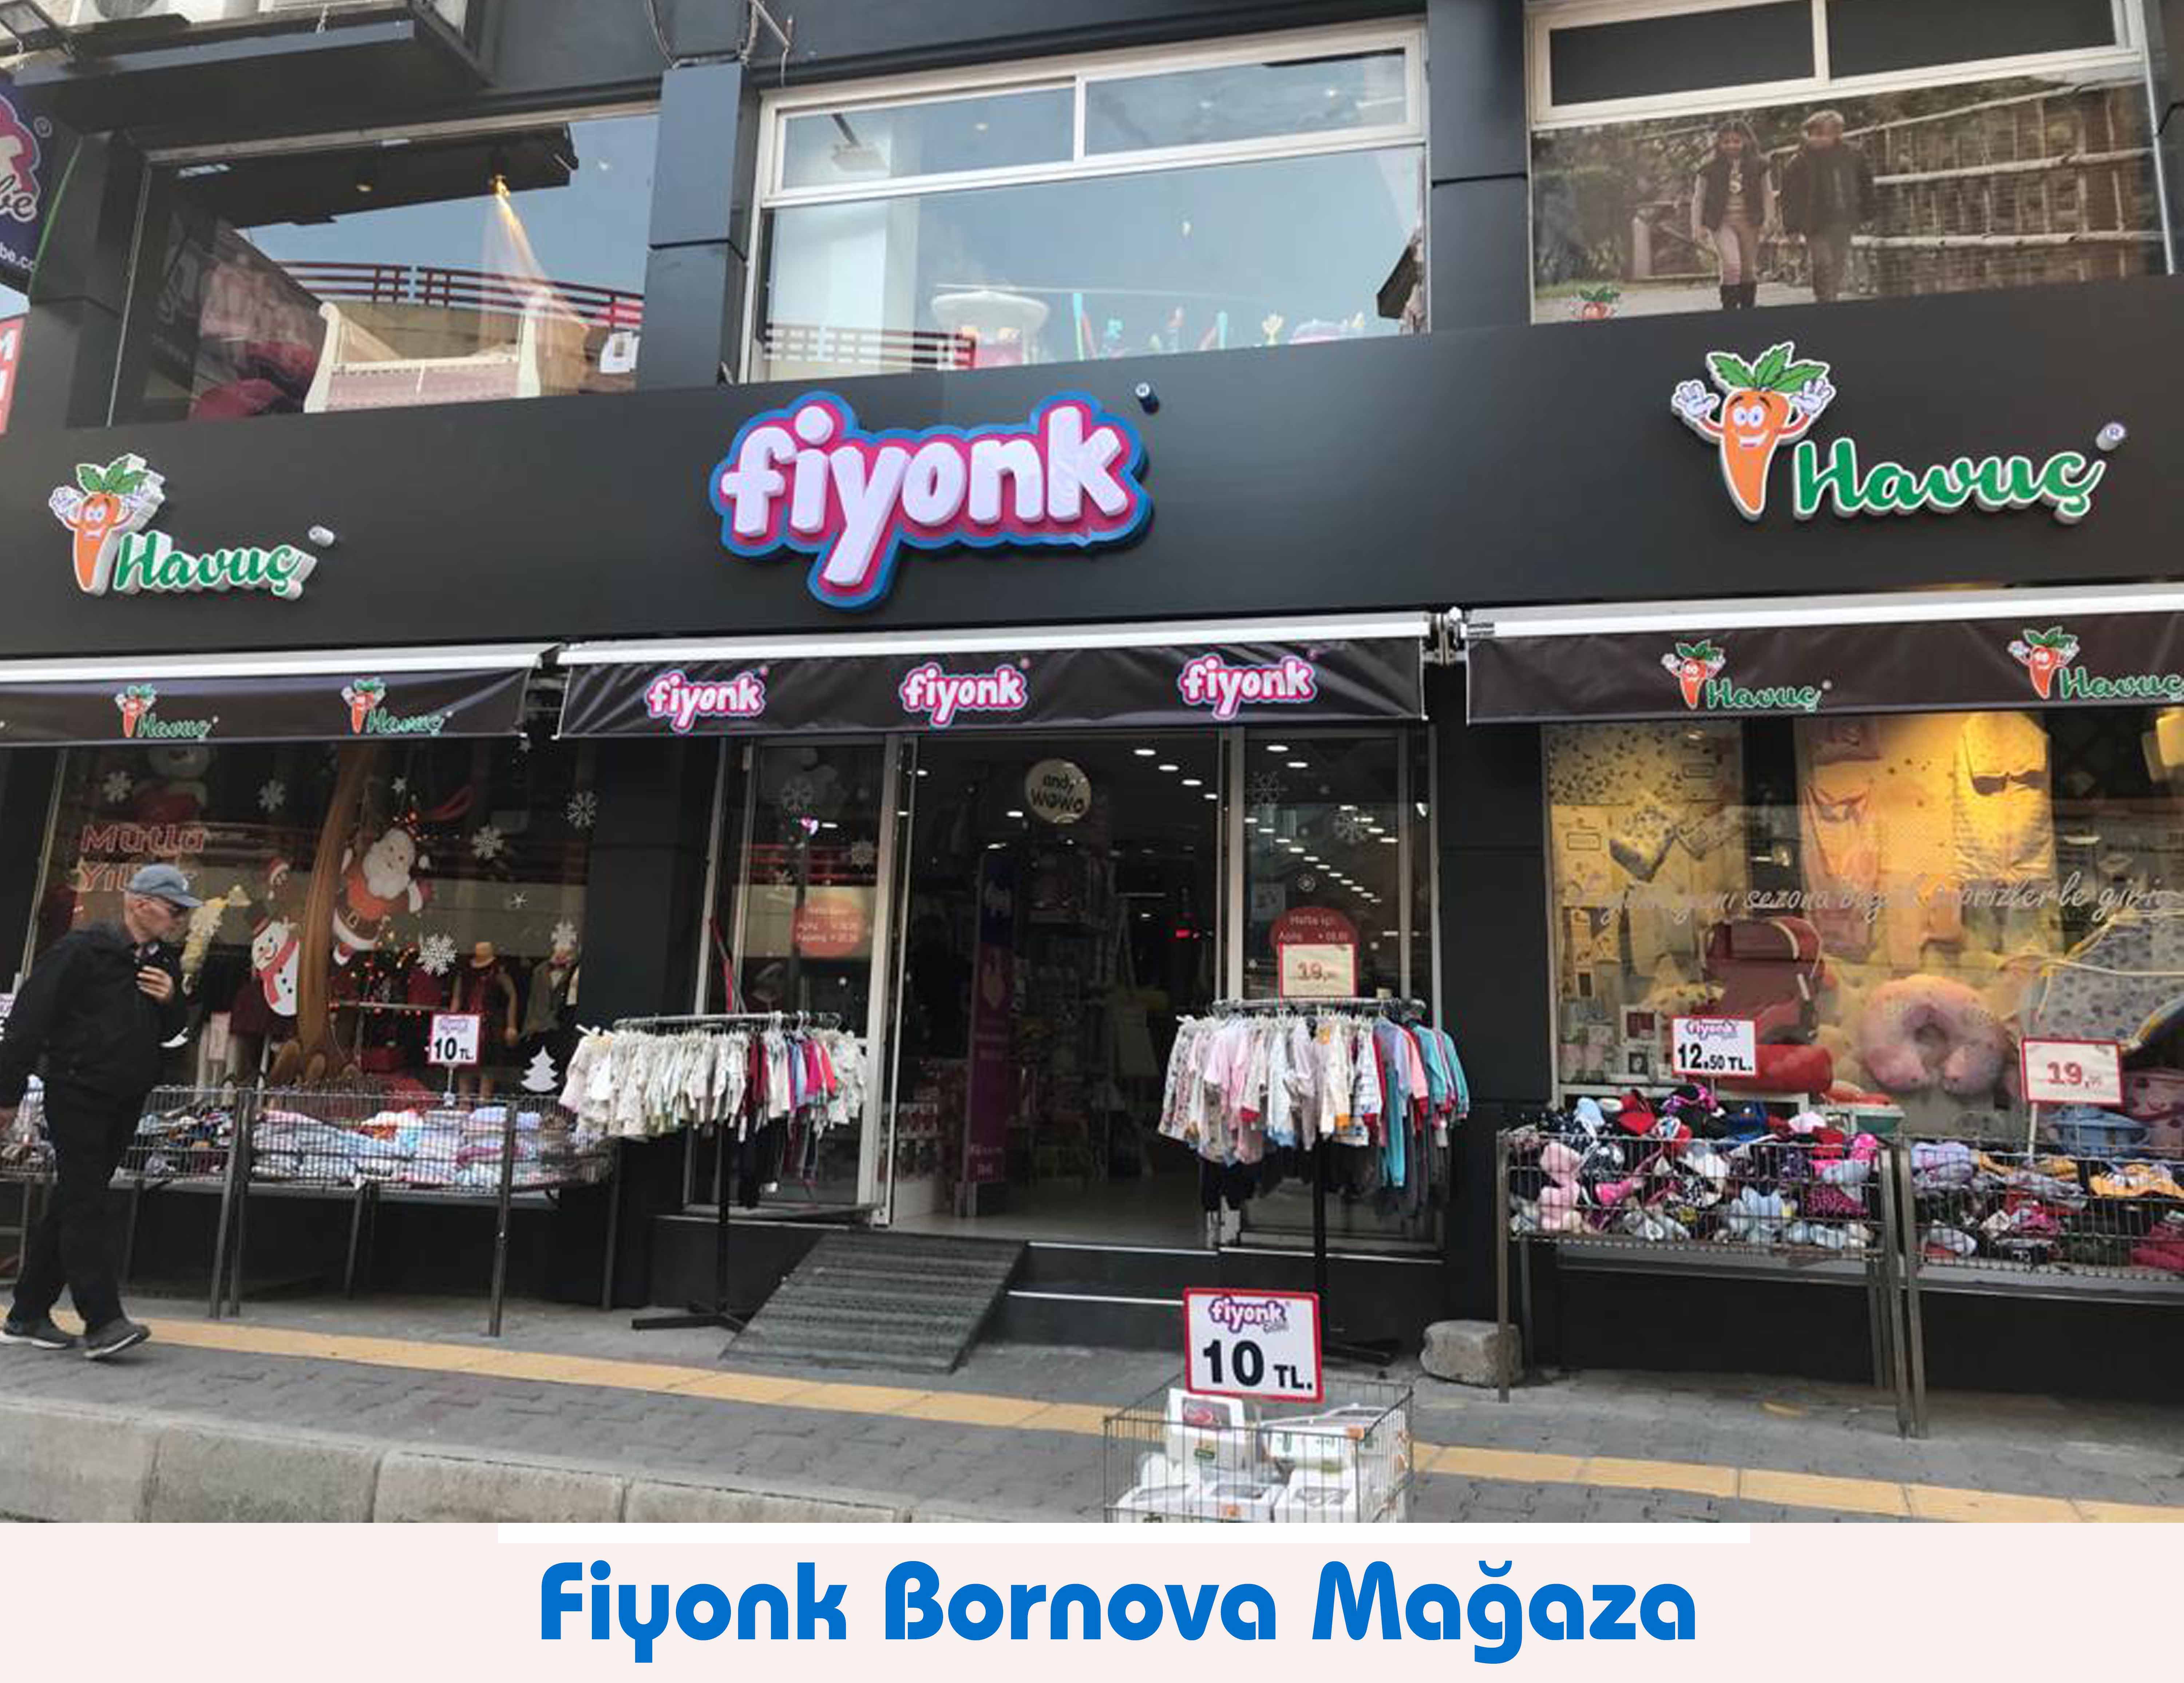 Fiyonk Bornova Mağazası